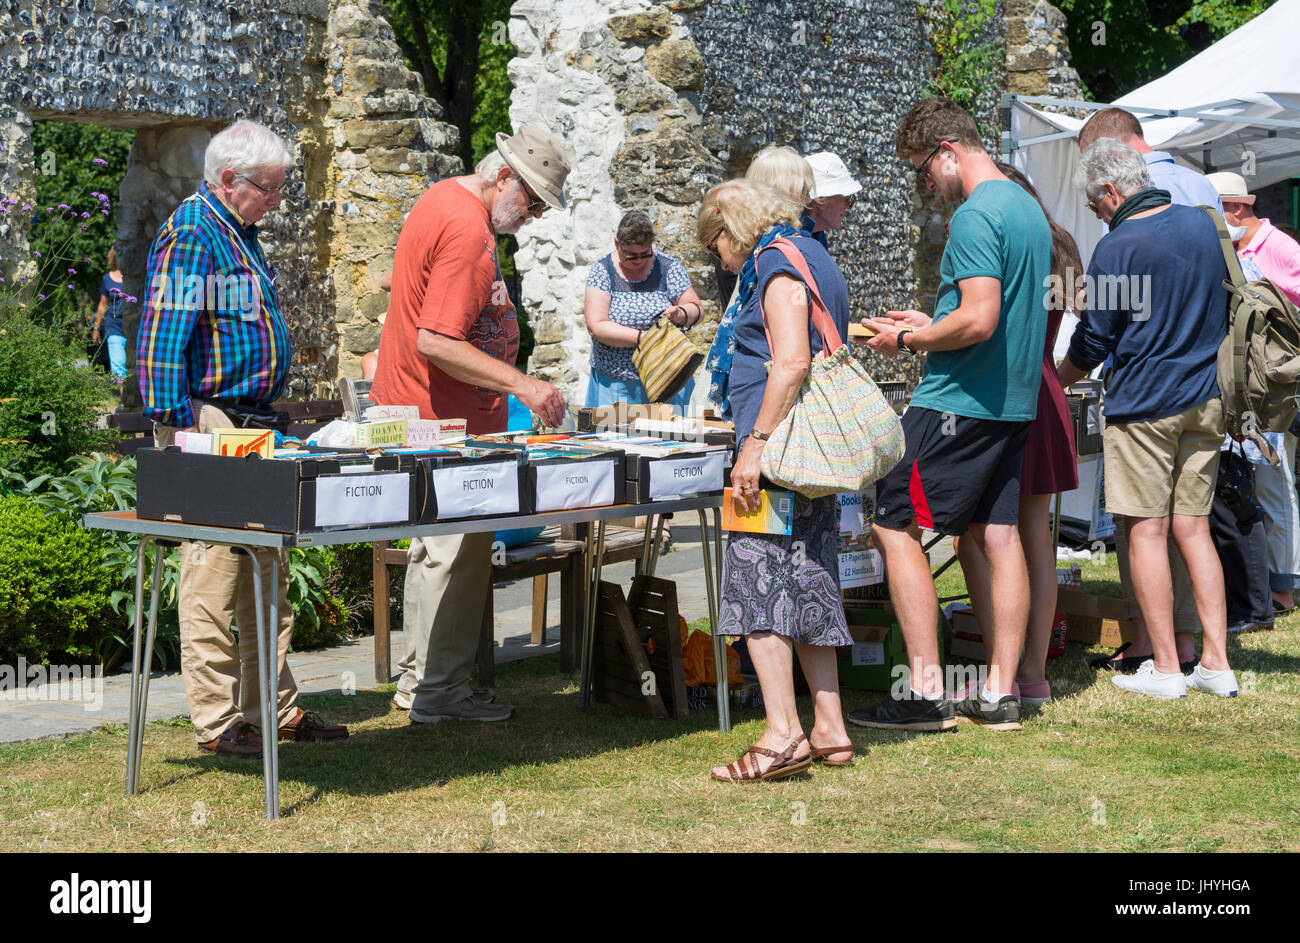 Les gens à un étal vendant des livres à une fête d'été dans le cadre d'une activité de bienfaisance au Royaume-Uni. La collecte de fonds pour la charité. Banque D'Images